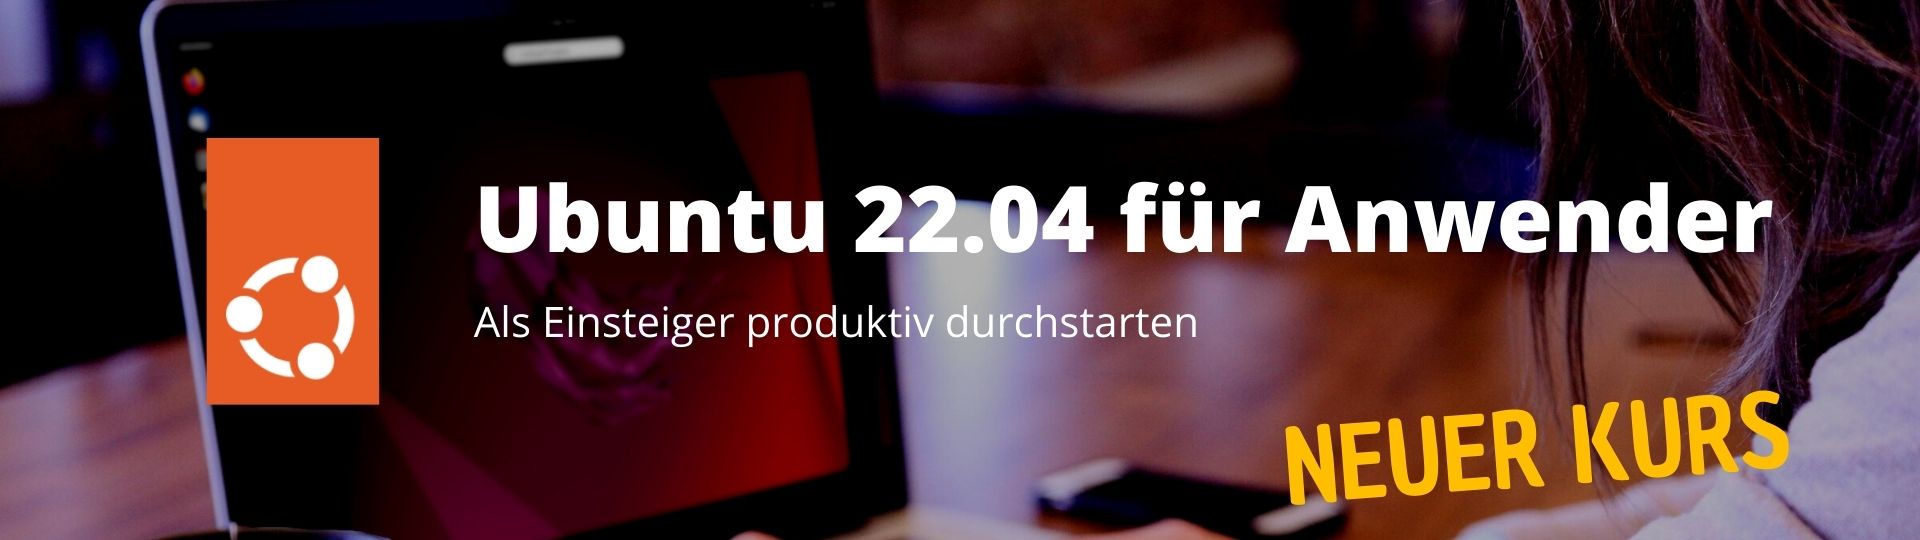 Ubuntu Kurs für Anwender